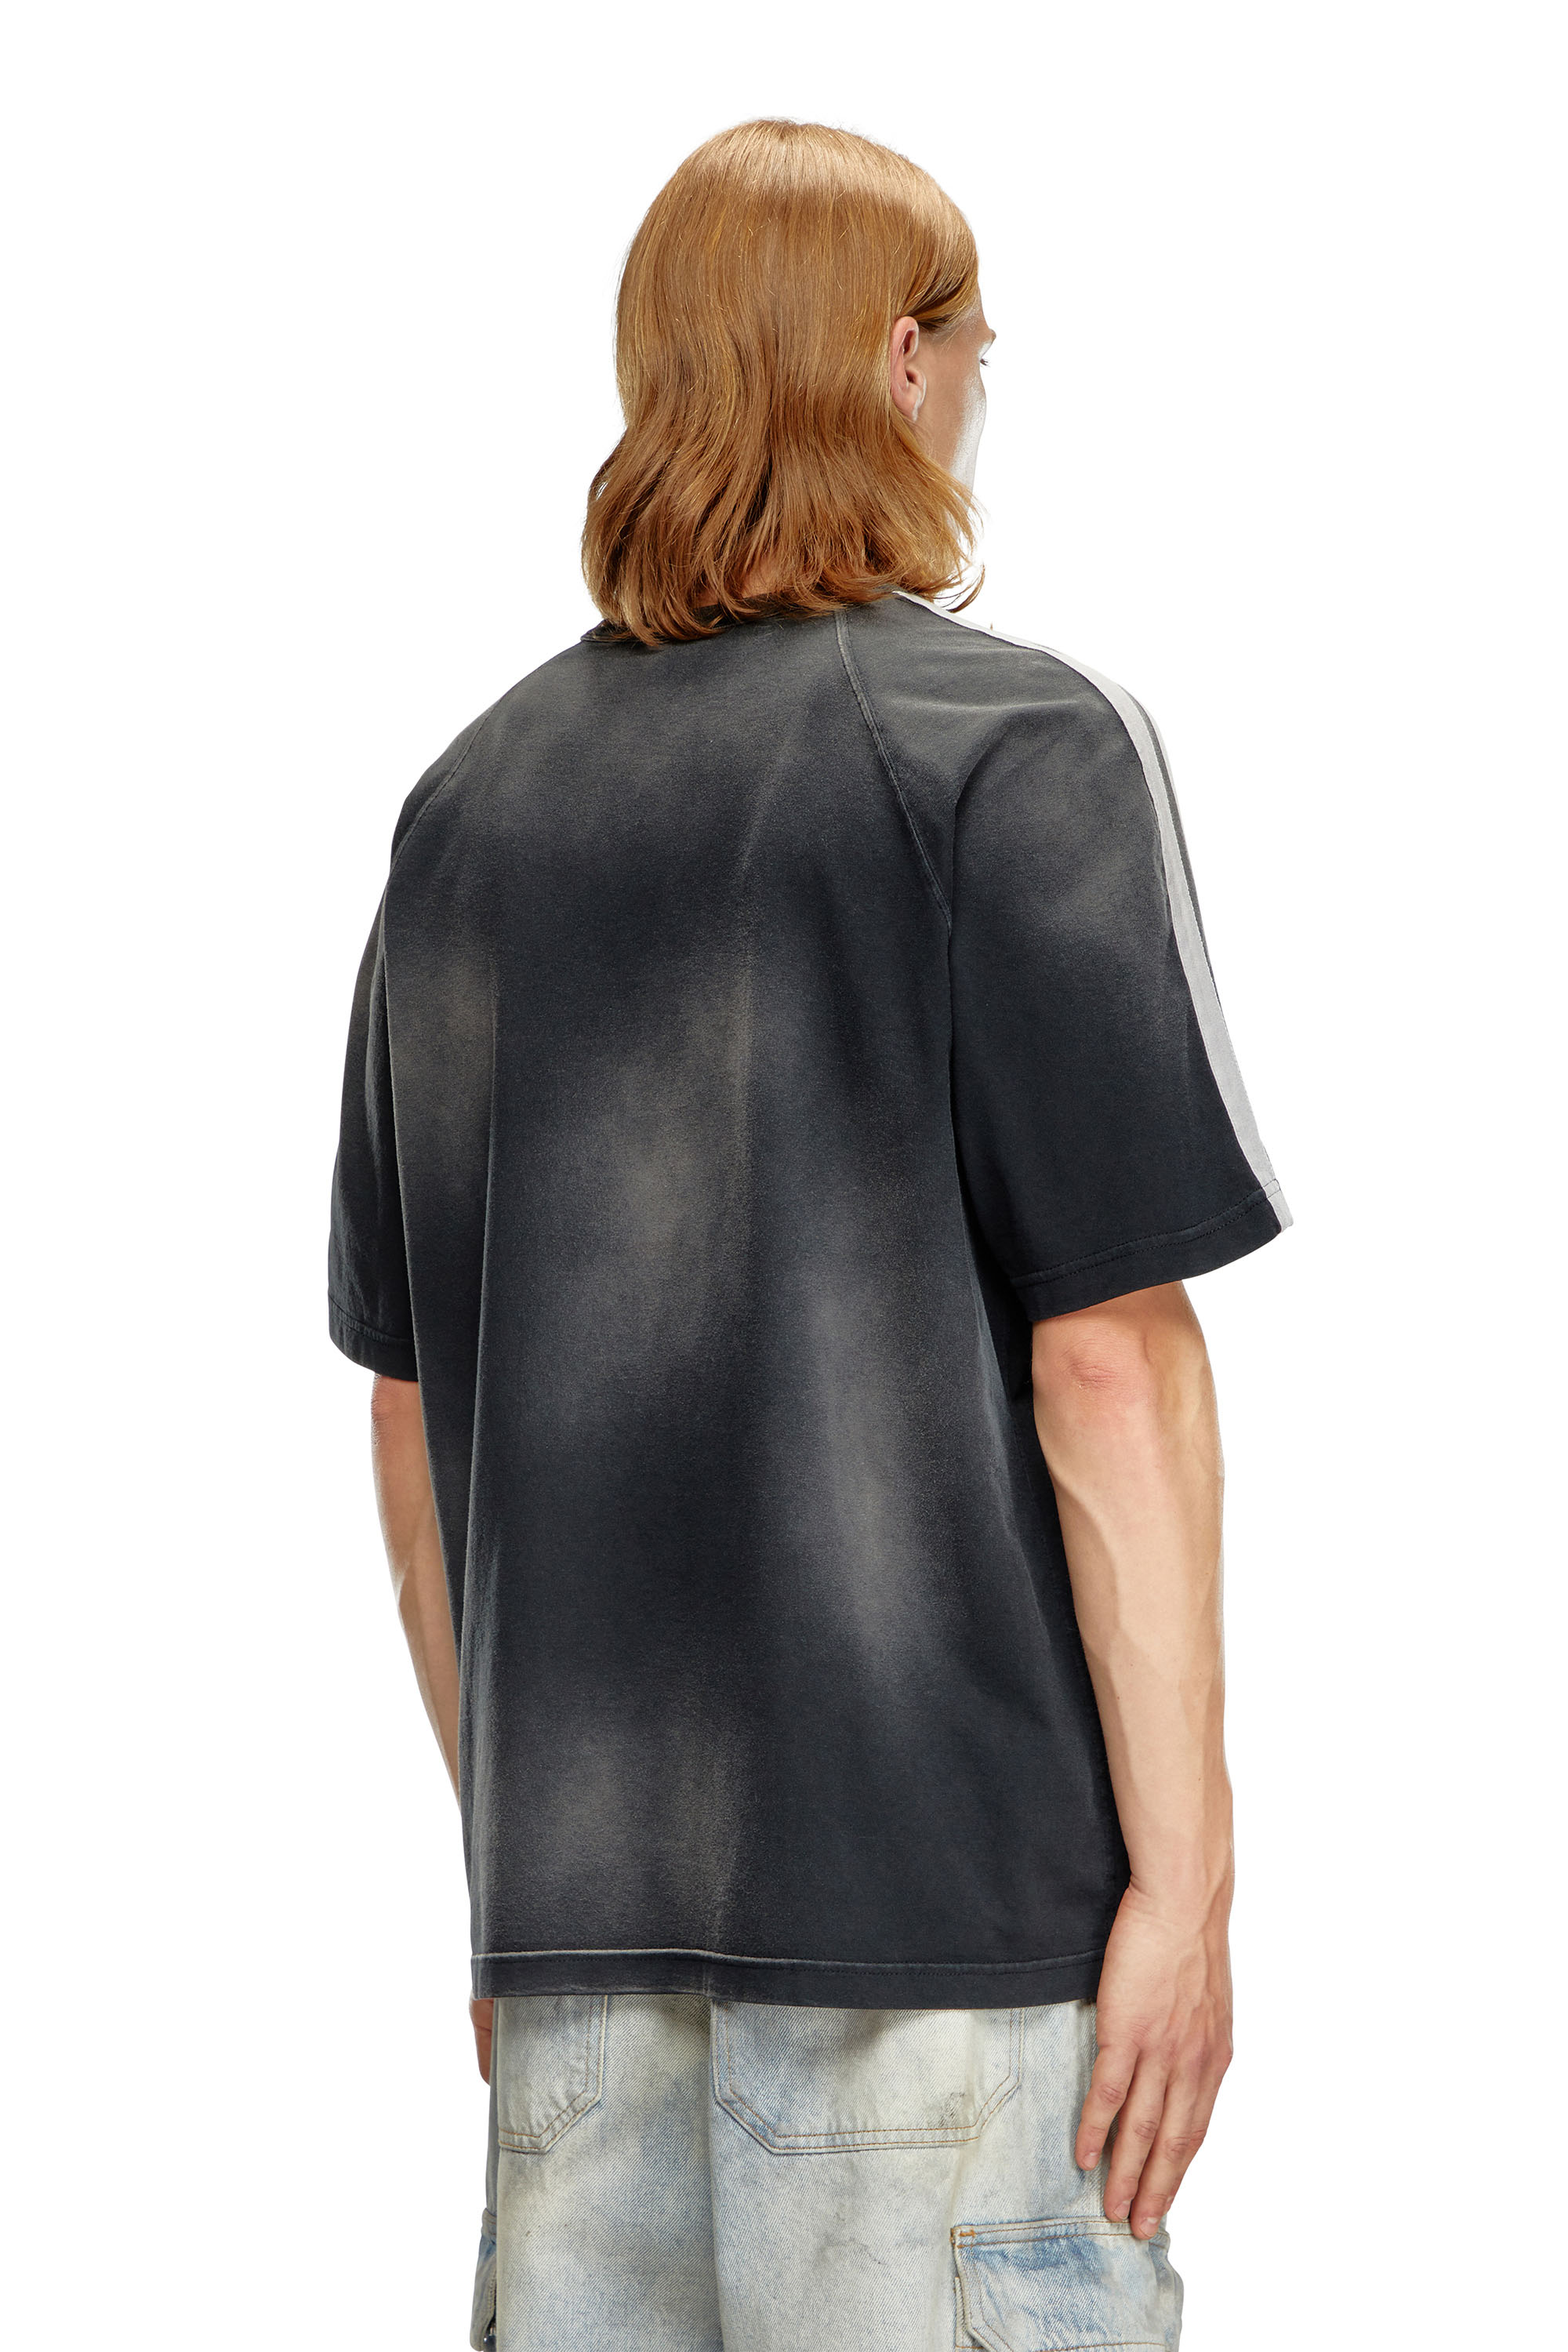 Diesel - T-ROXT-STRIPE, Hombre Camiseta desteñida con logotipo estampado en relieve in Negro - Image 4